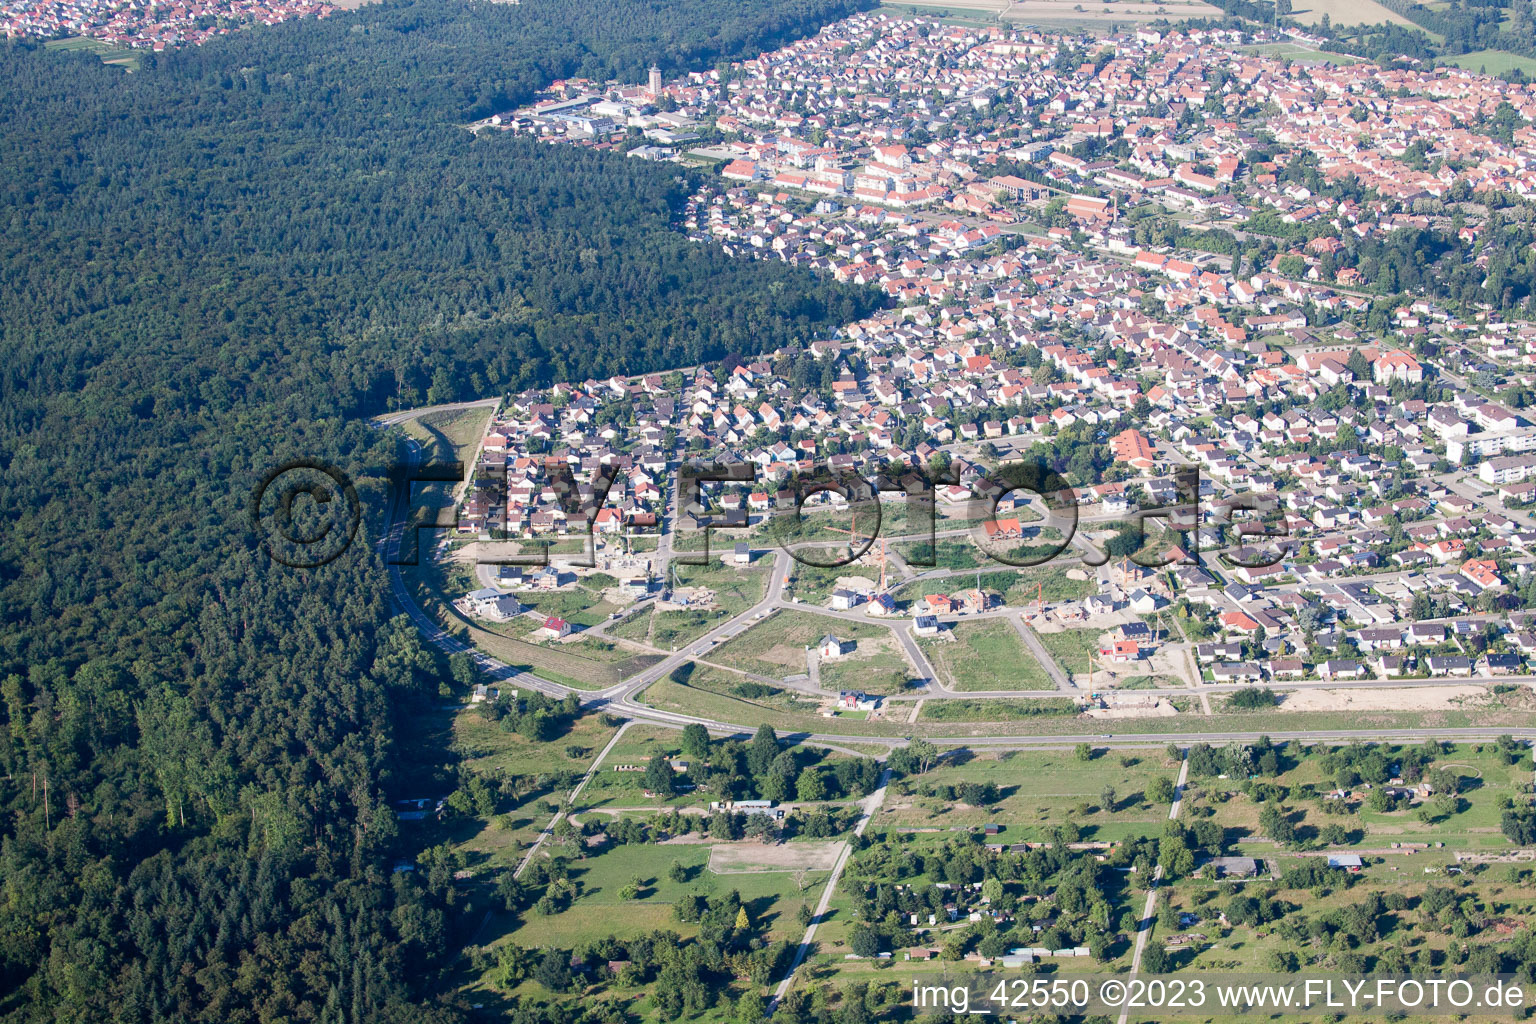 Vue d'oiseau de Nouvelle zone de développement ouest à Jockgrim dans le département Rhénanie-Palatinat, Allemagne